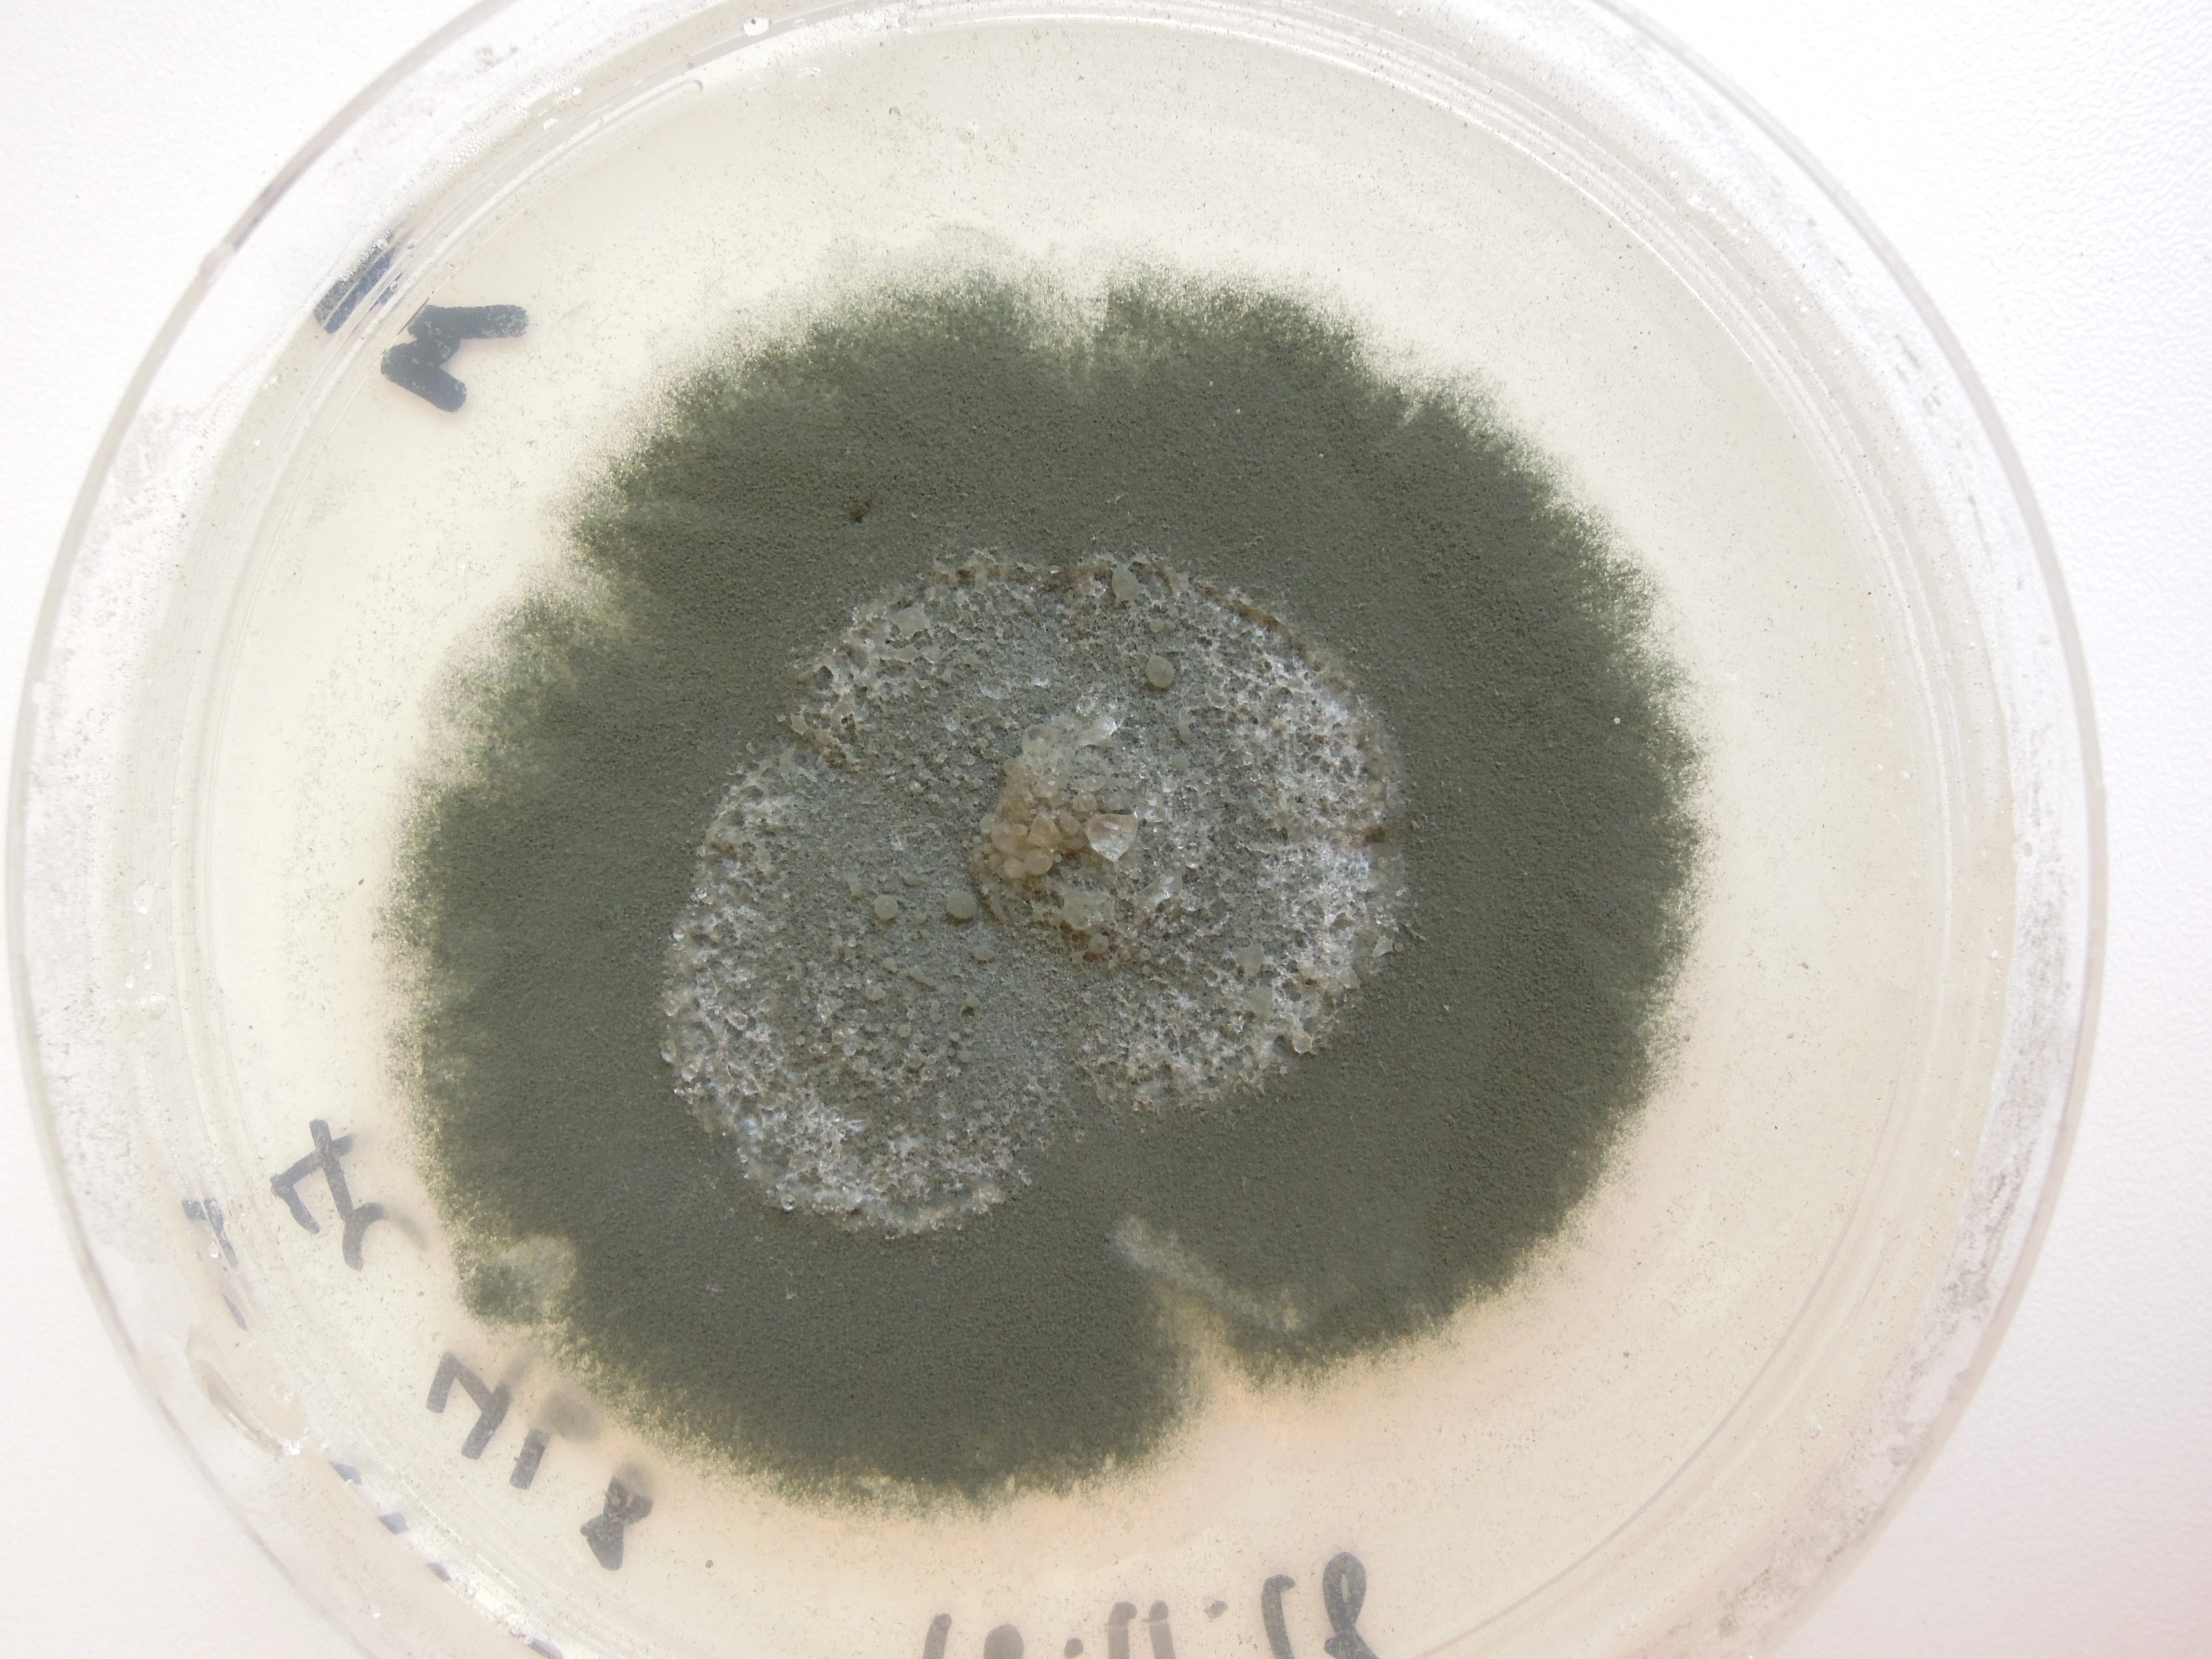 Penselmuggsopper: Penicillium spinulosum.